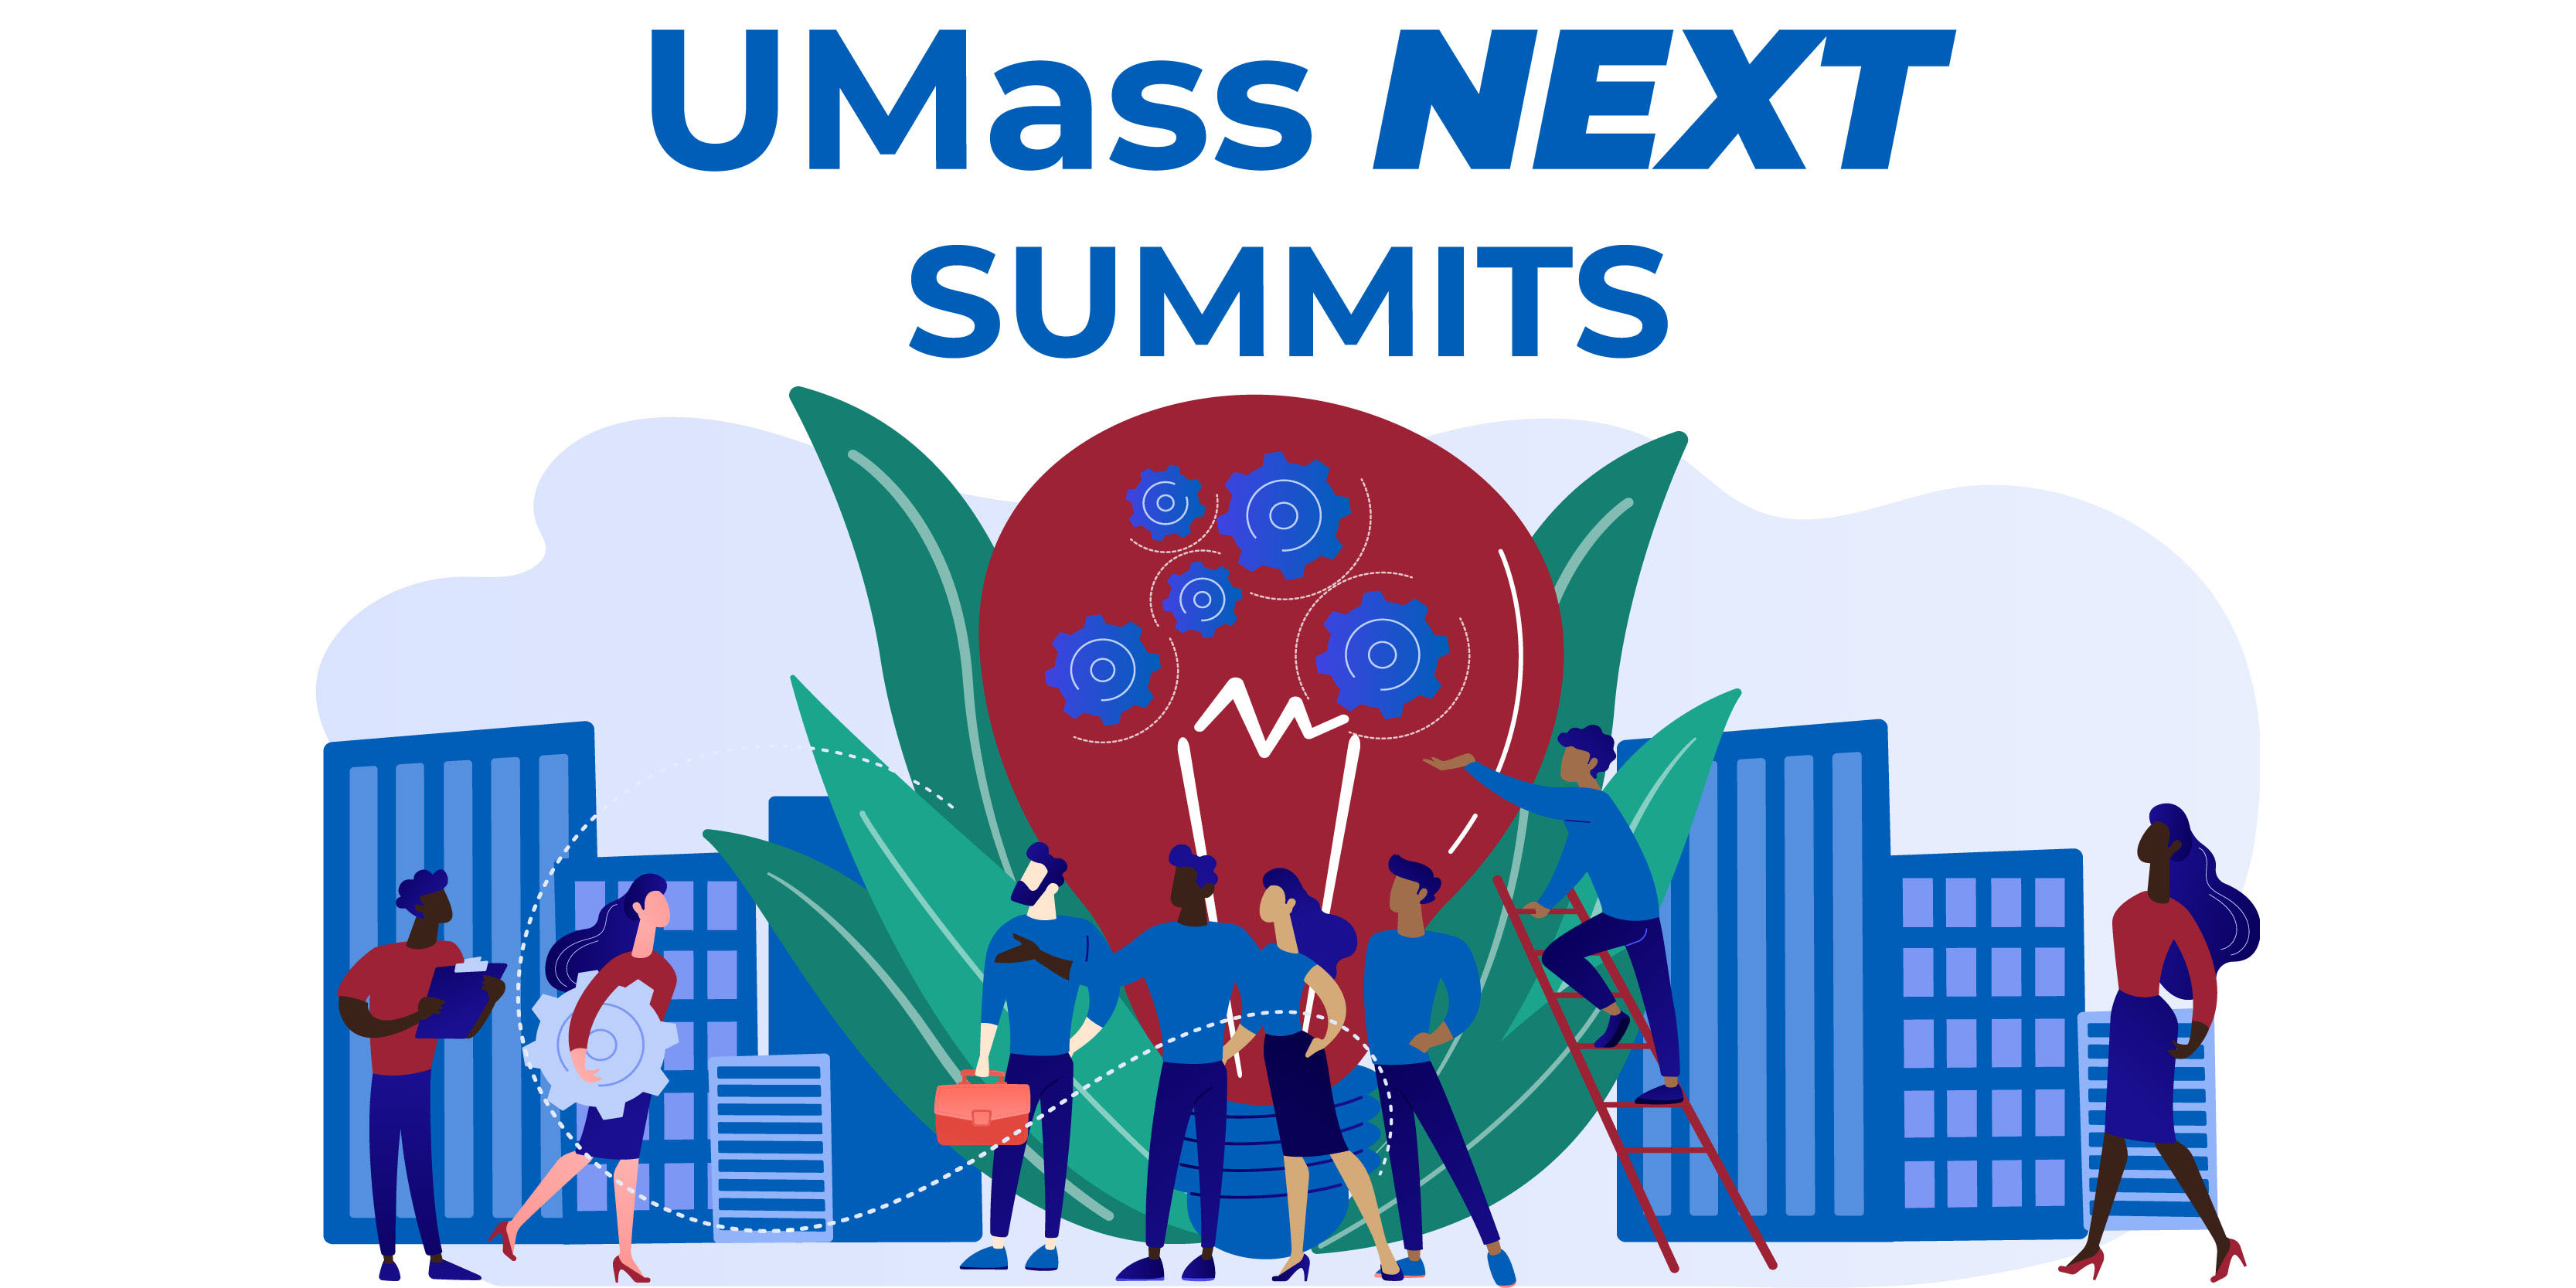 UMass NEXT Summits graphic